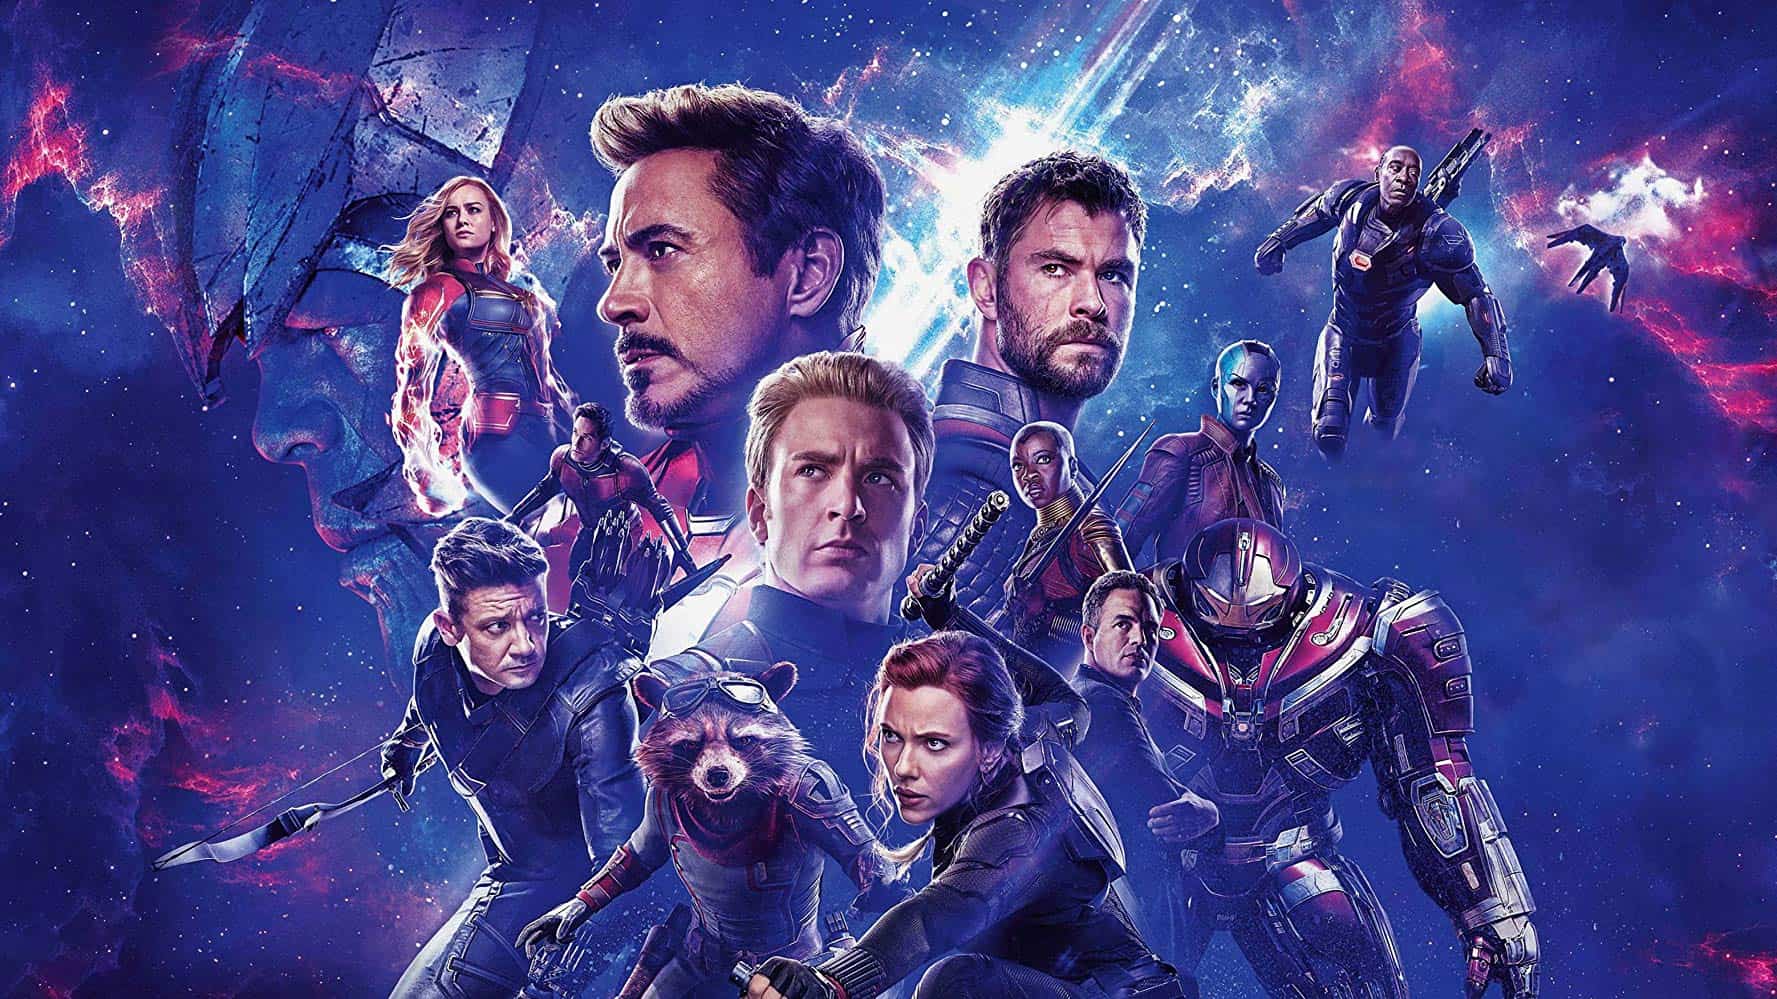 “Avengers: Endgame” – From Heartbreak to Hope